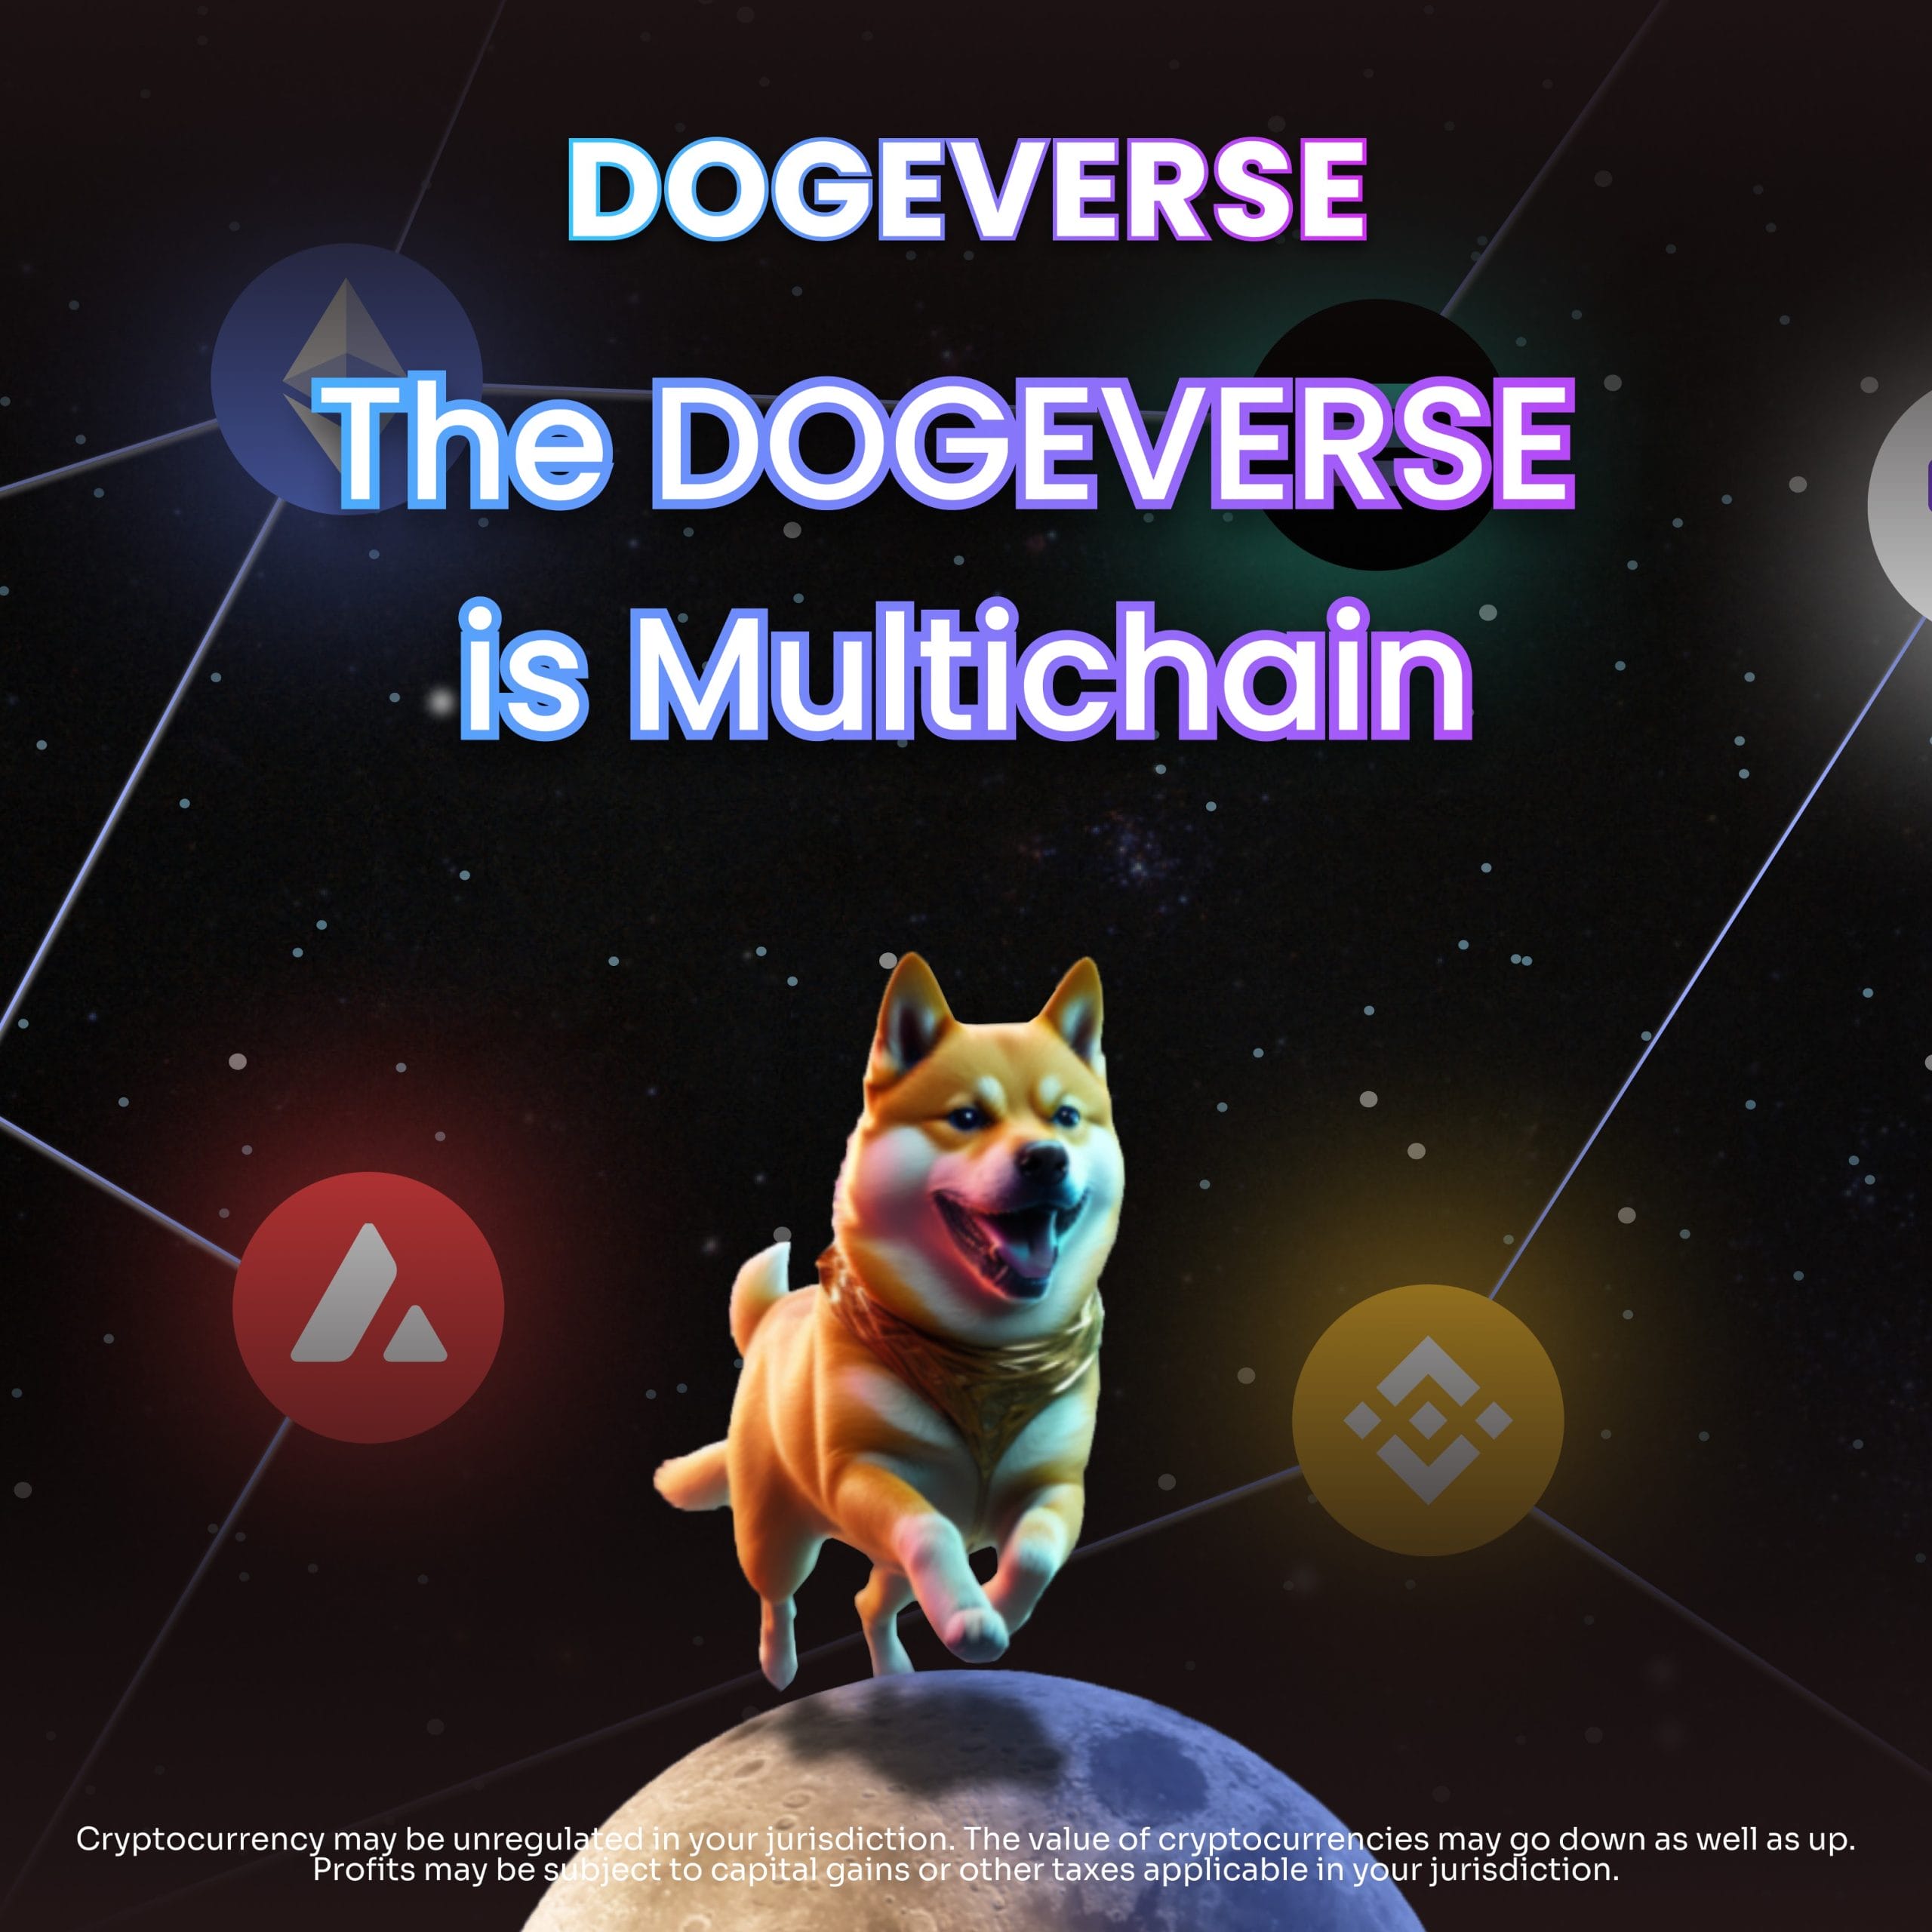 La nueva Doge meme coin Dogeverse recauda 250.000 en minutos – ¿La próxima en explotar?